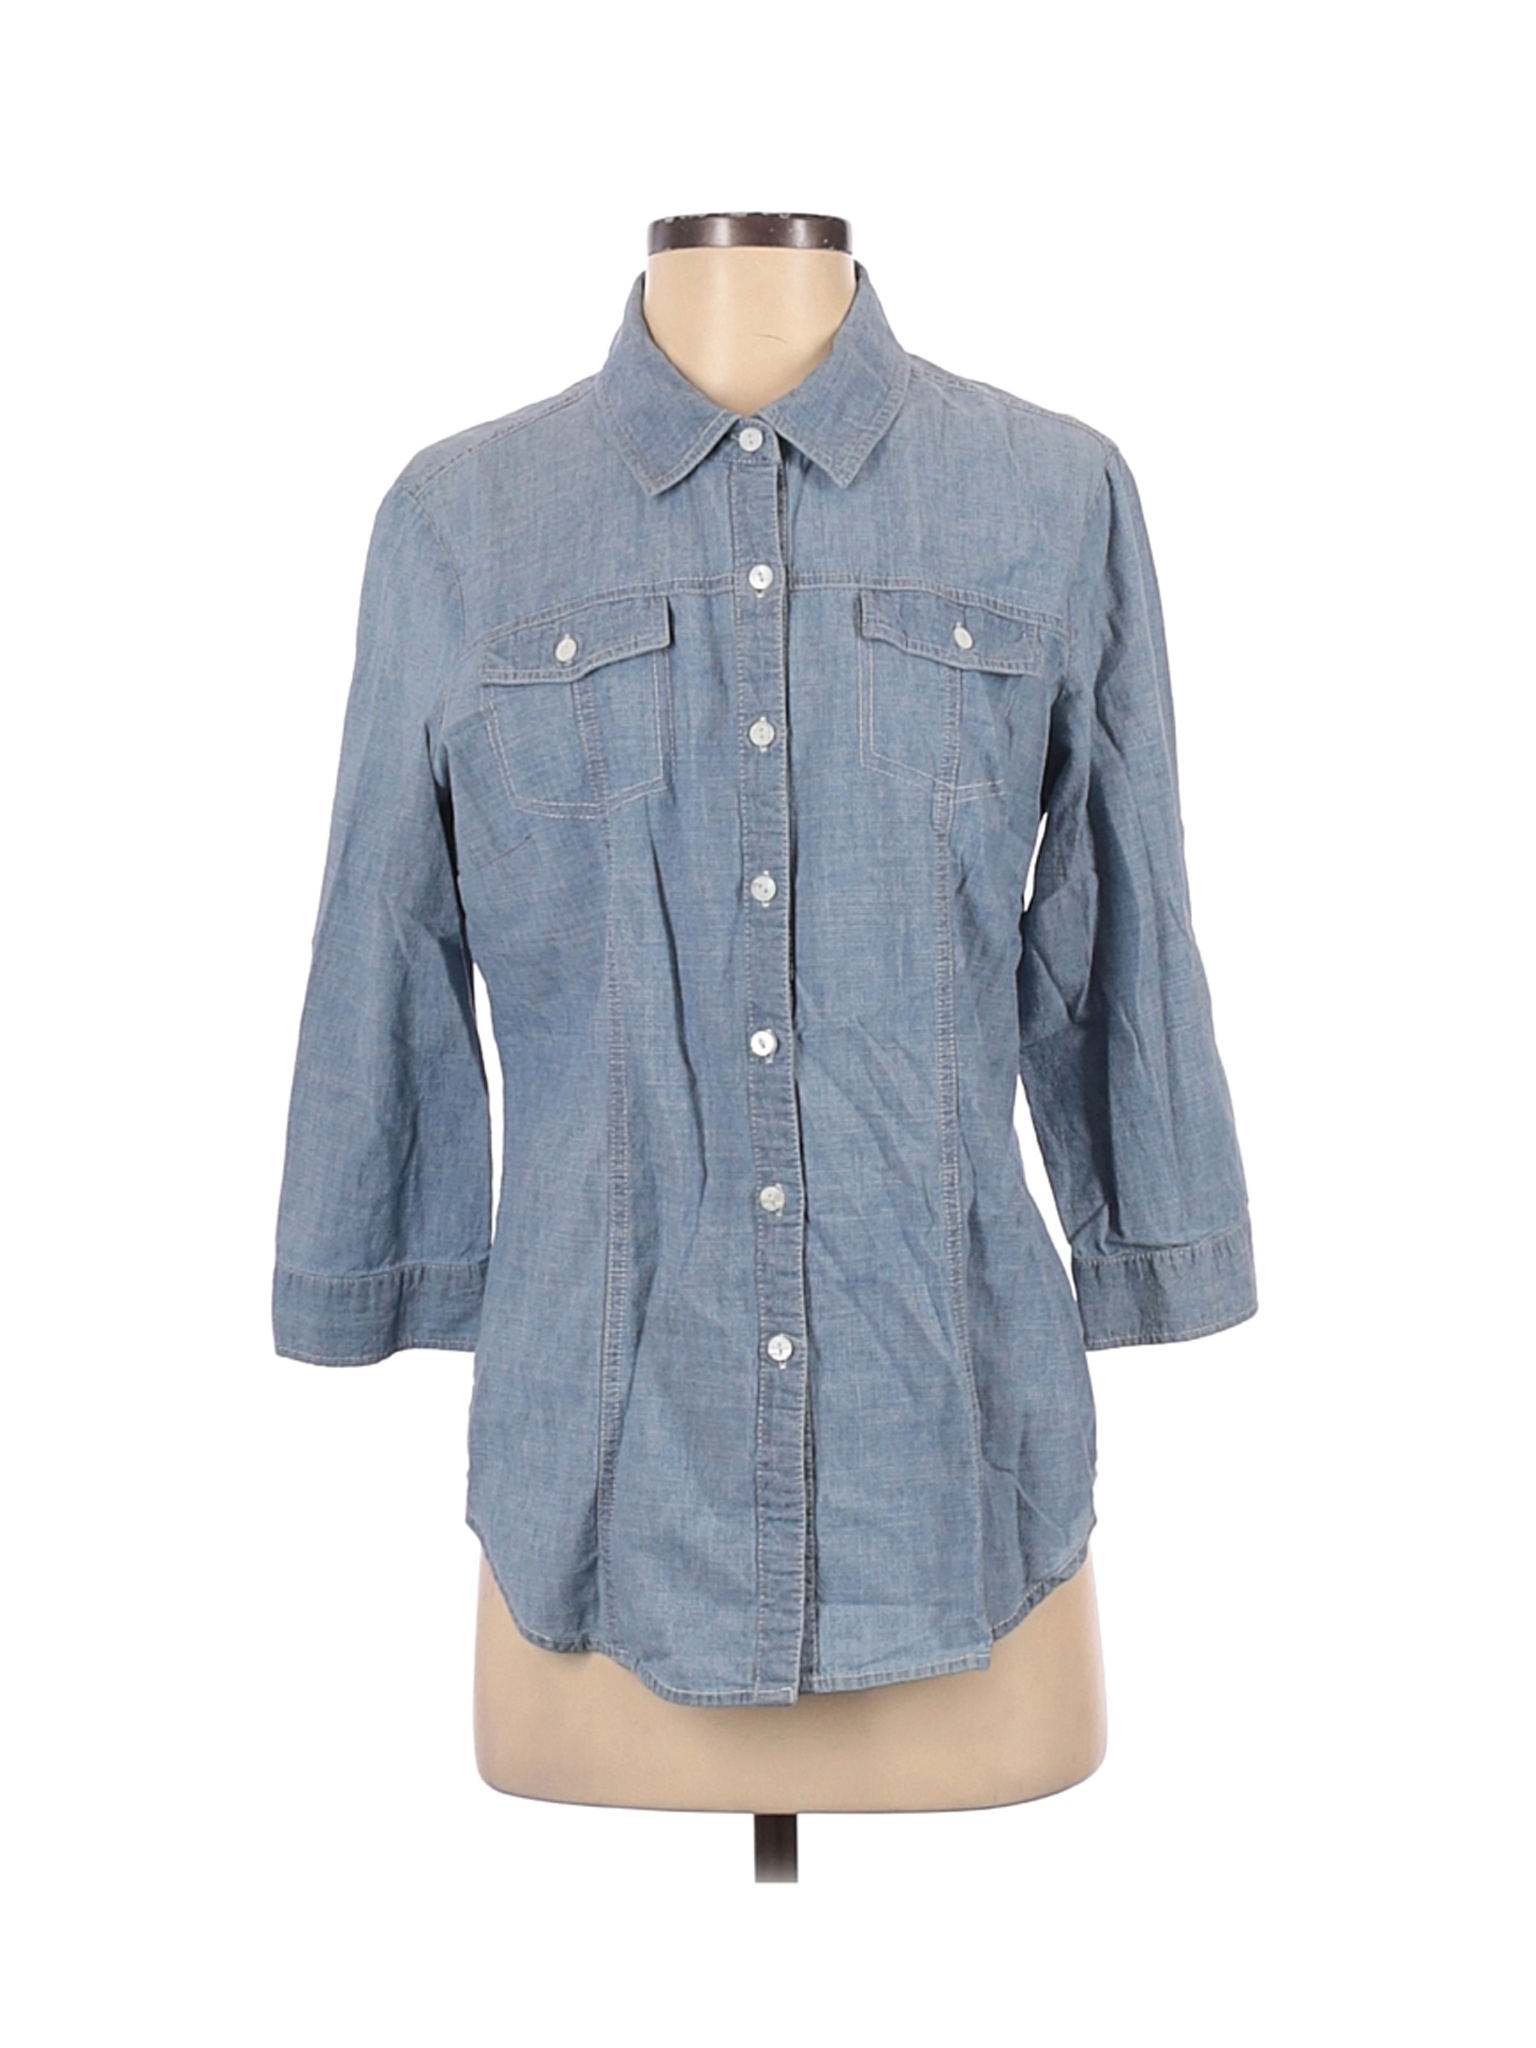 Hester & Orchard Women Blue Long Sleeve Button-Down Shirt S | eBay